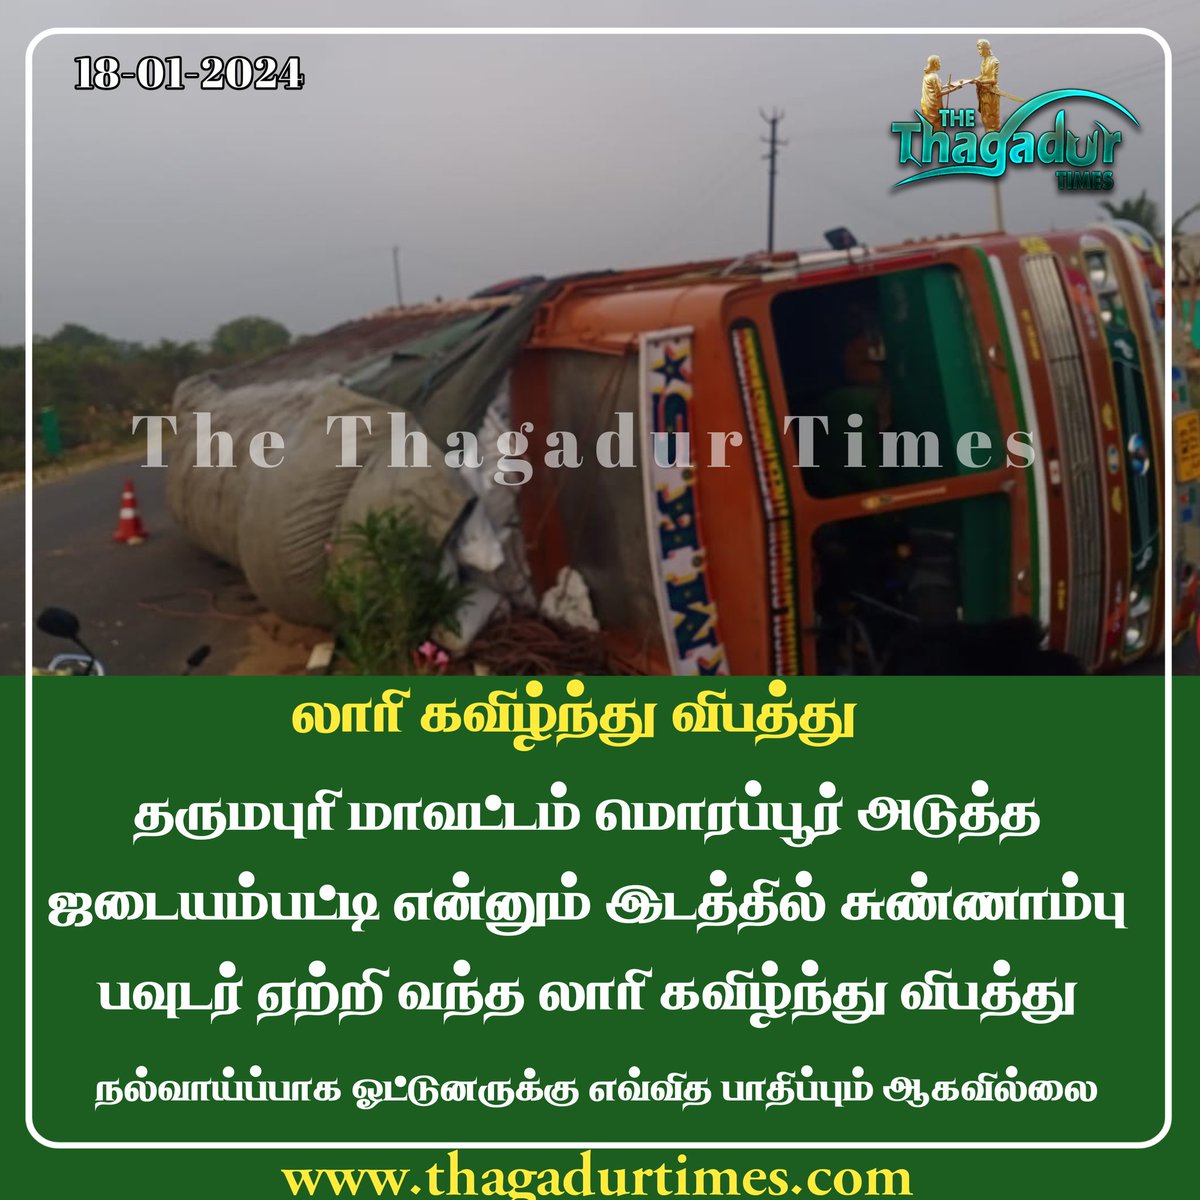 மொரப்பூர் அருகே லாரி கவிழ்ந்து விபத்து
#ThagadurTimes #accident #Morappur #Dharmapuri #DharmapuriNews